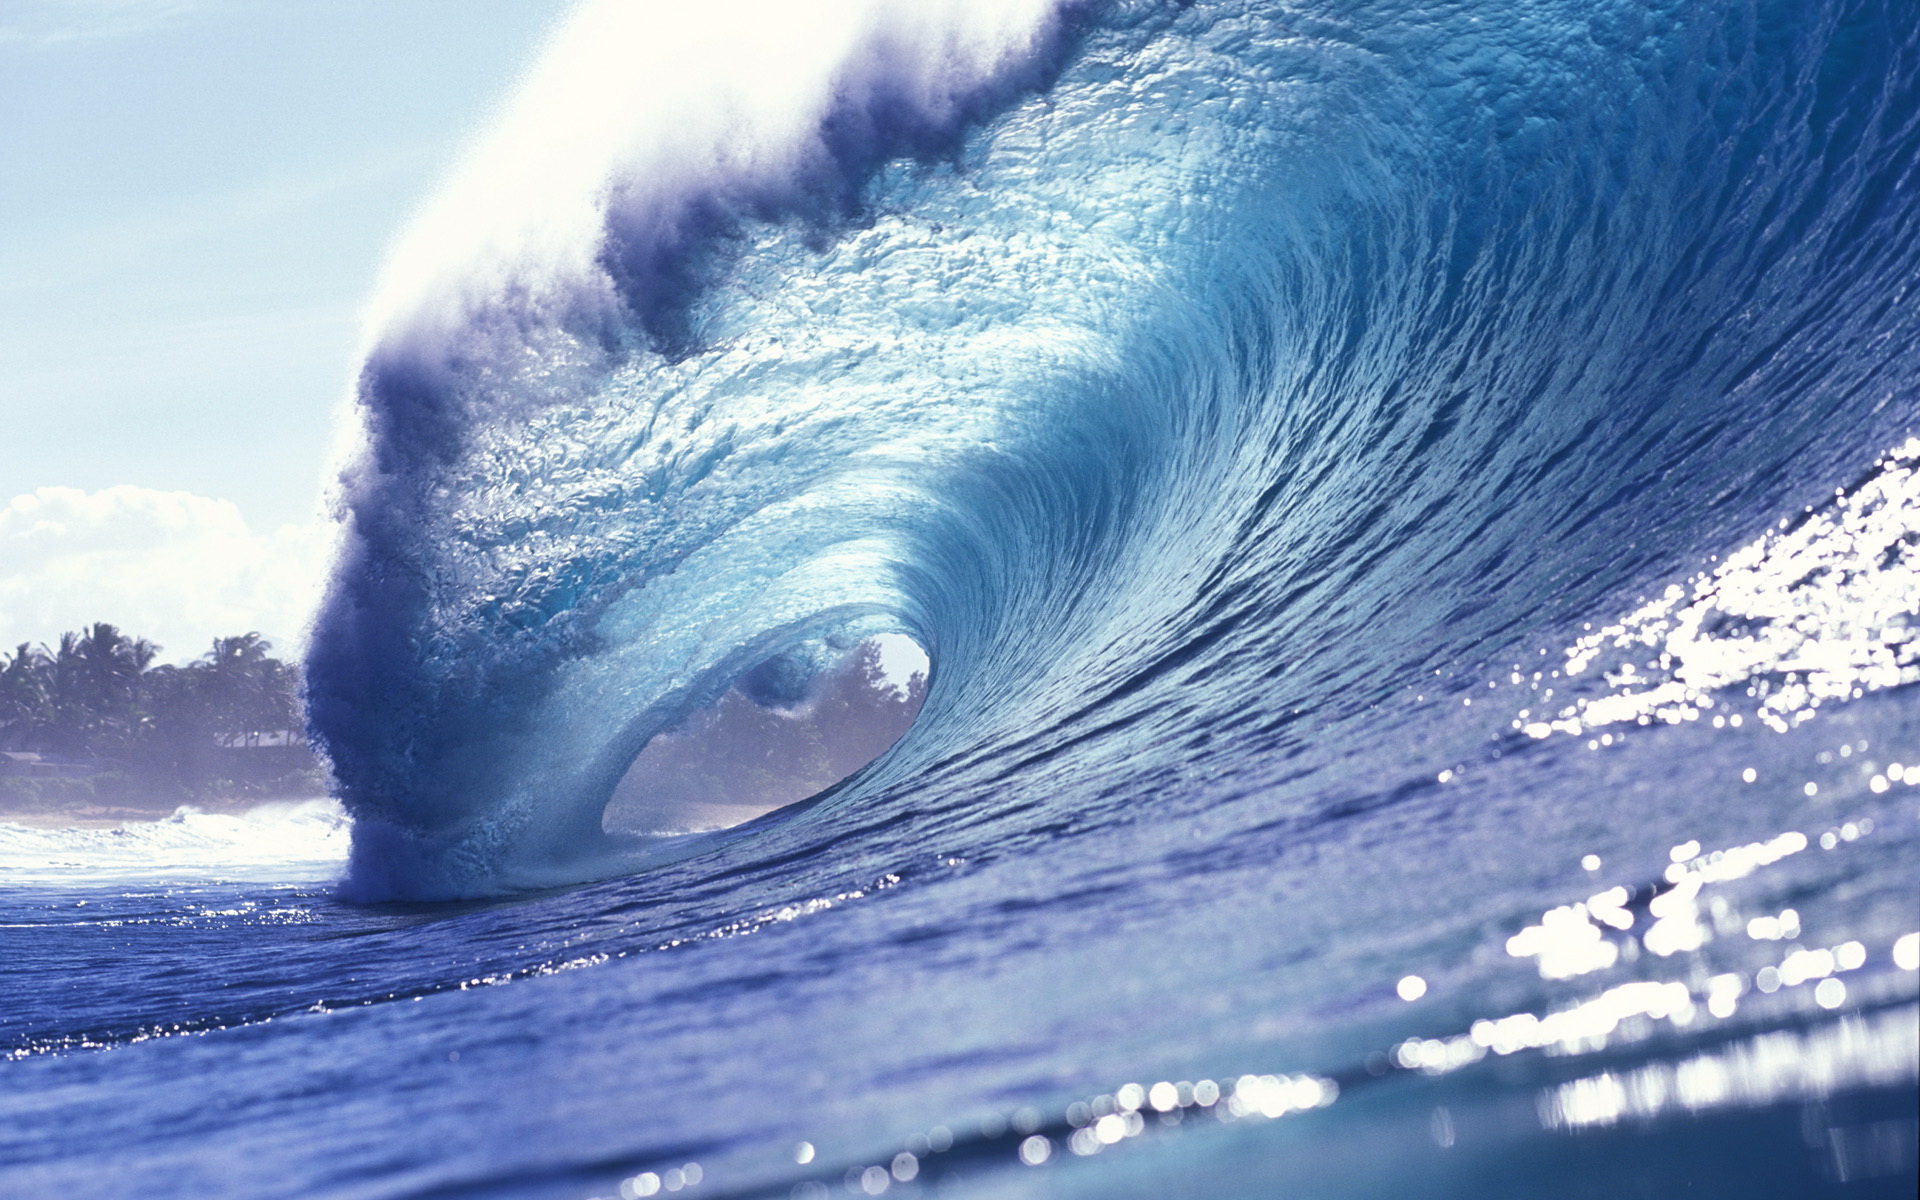 Hình nền sóng (Wave wallpaper): Nếu bạn mong muốn cho màn hình của mình trông sống động và năng động hơn, những hình nền sóng đang chuyển động đầy sống động chắc chắn sẽ là lựa chọn hoàn hảo. Từ những con sóng to lớn đến những sóng nổi nhè nhẹ, tổng hợp đa dạng các hình nền sóng độc đáo để bạn tạo nên phong cách riêng cho mình. 